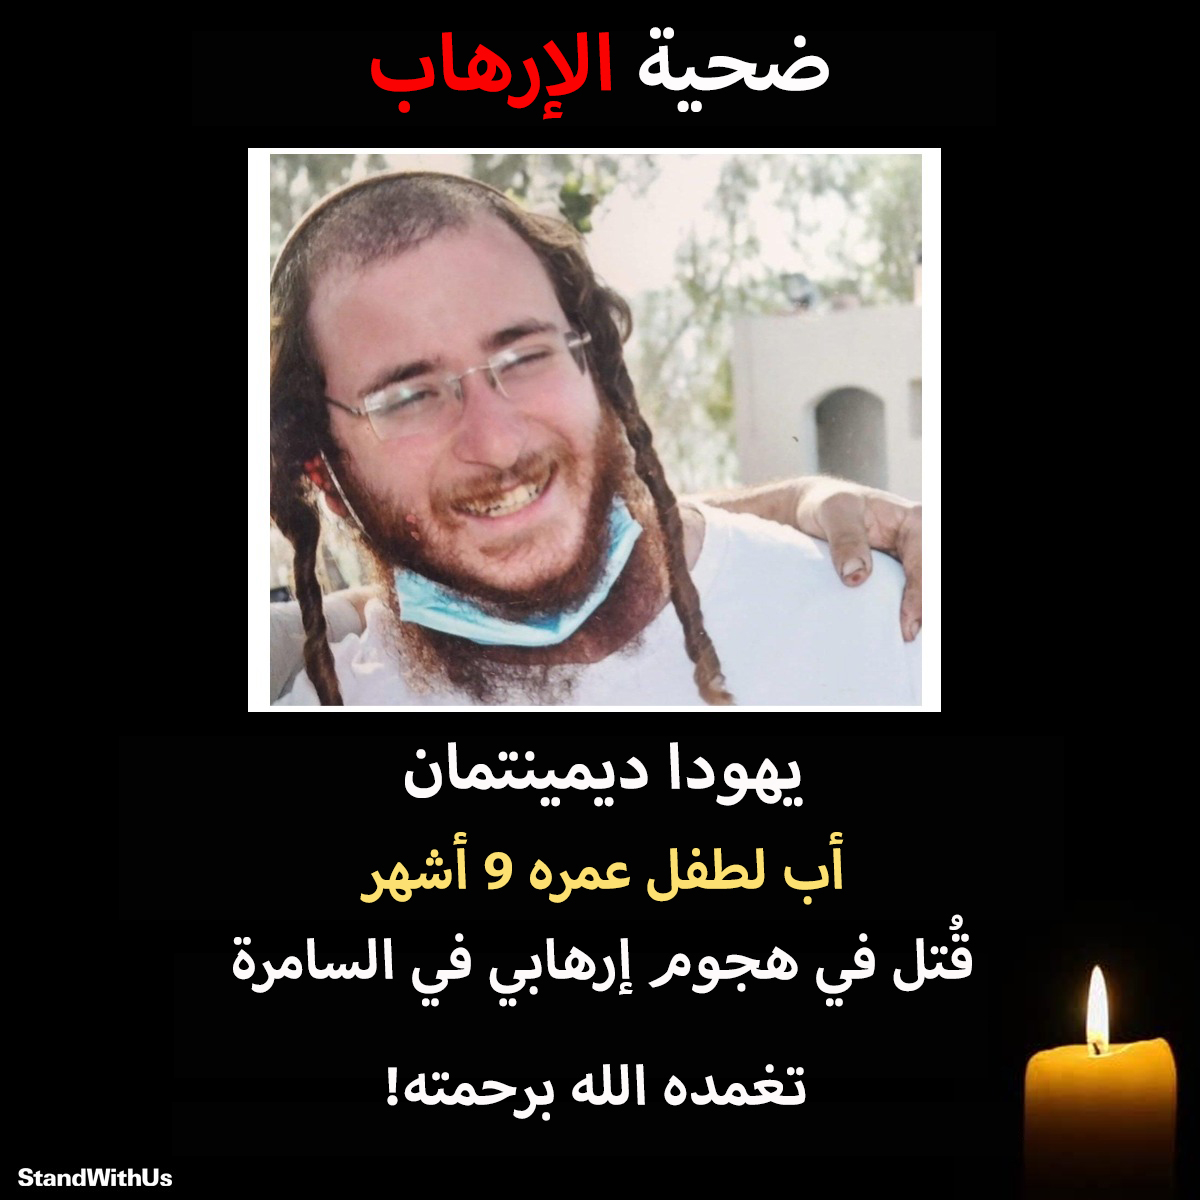 المواطن الإسرائيلي يهودا ديمينتمان (25 عامًا) قُتل في هجوم إطلاق نار إرهابي بالأمس بالقرب من بلدة حومش،…